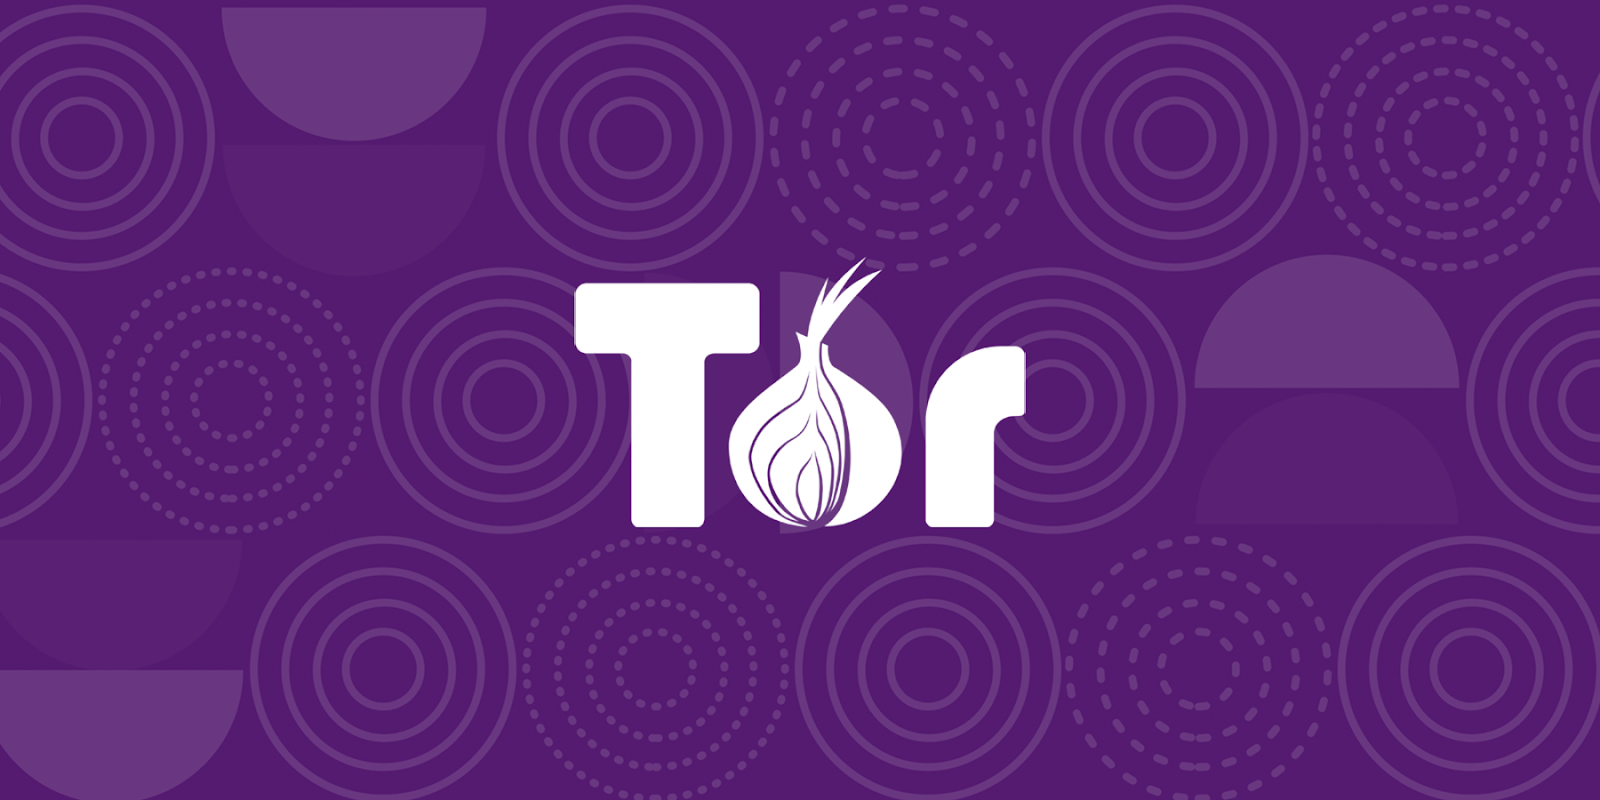 1. Navegador Tor